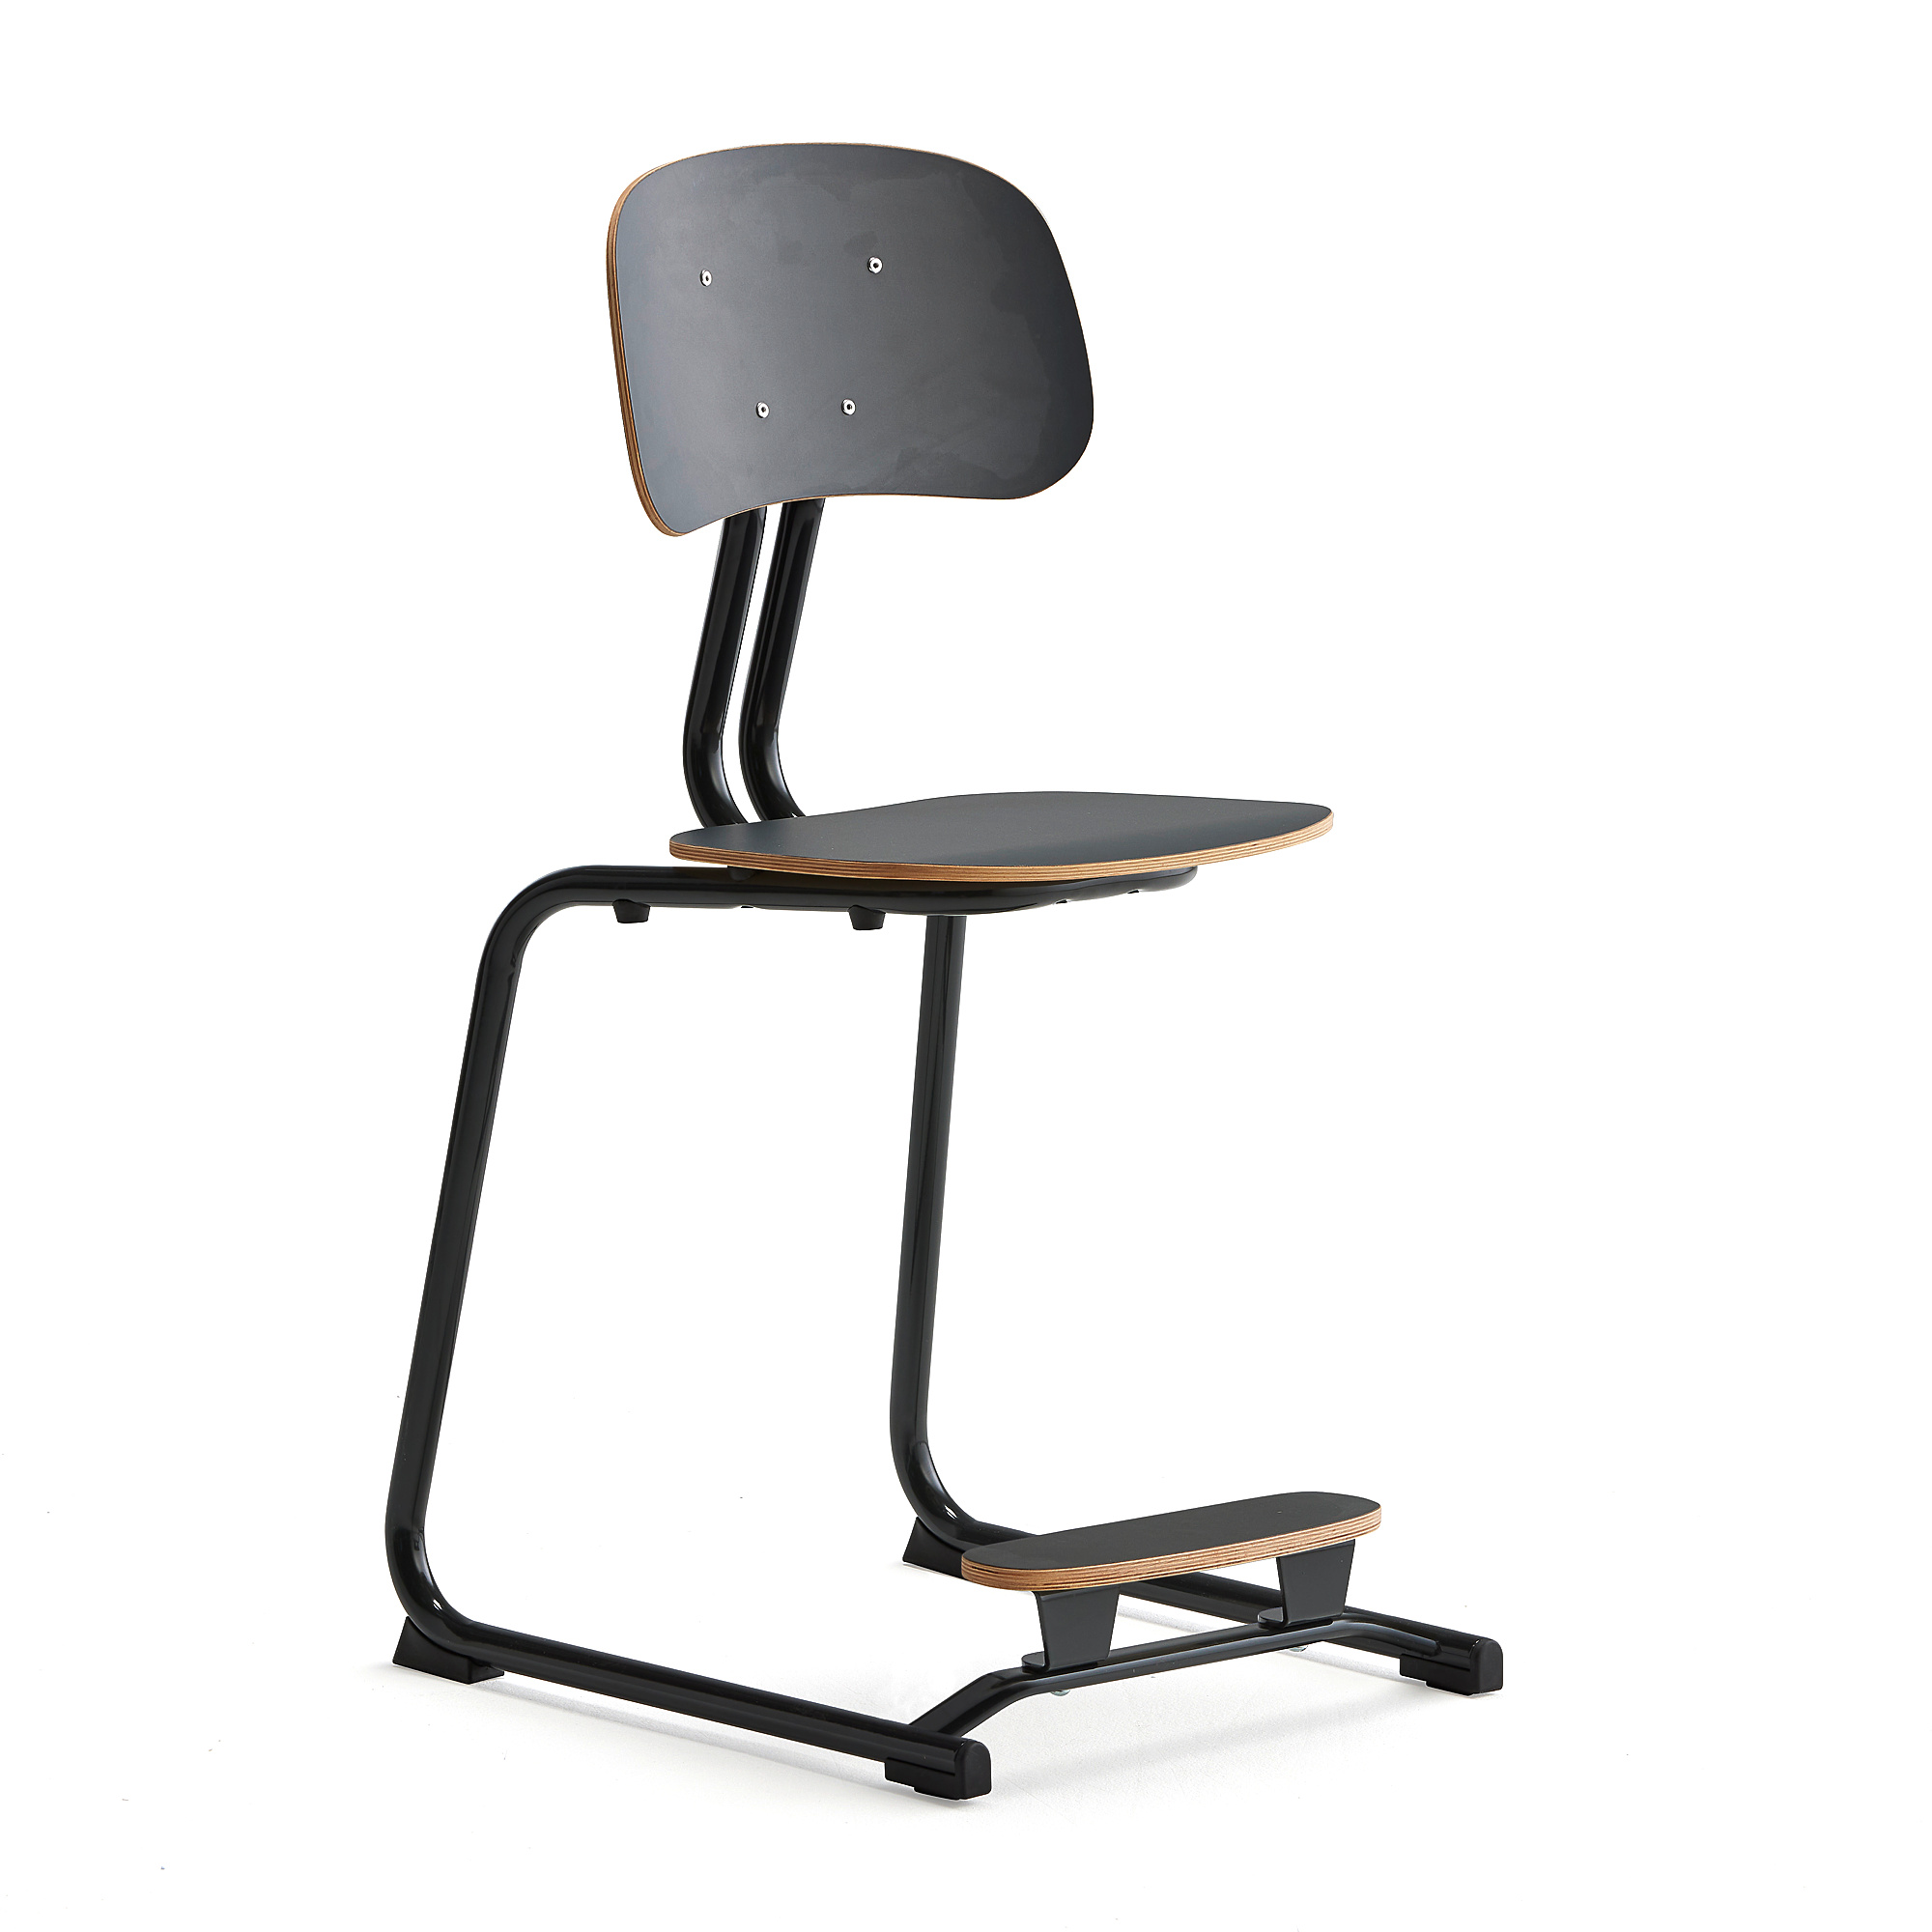 Školní židle YNGVE, ližinová podnož, výška 500 mm, antracitově šedá